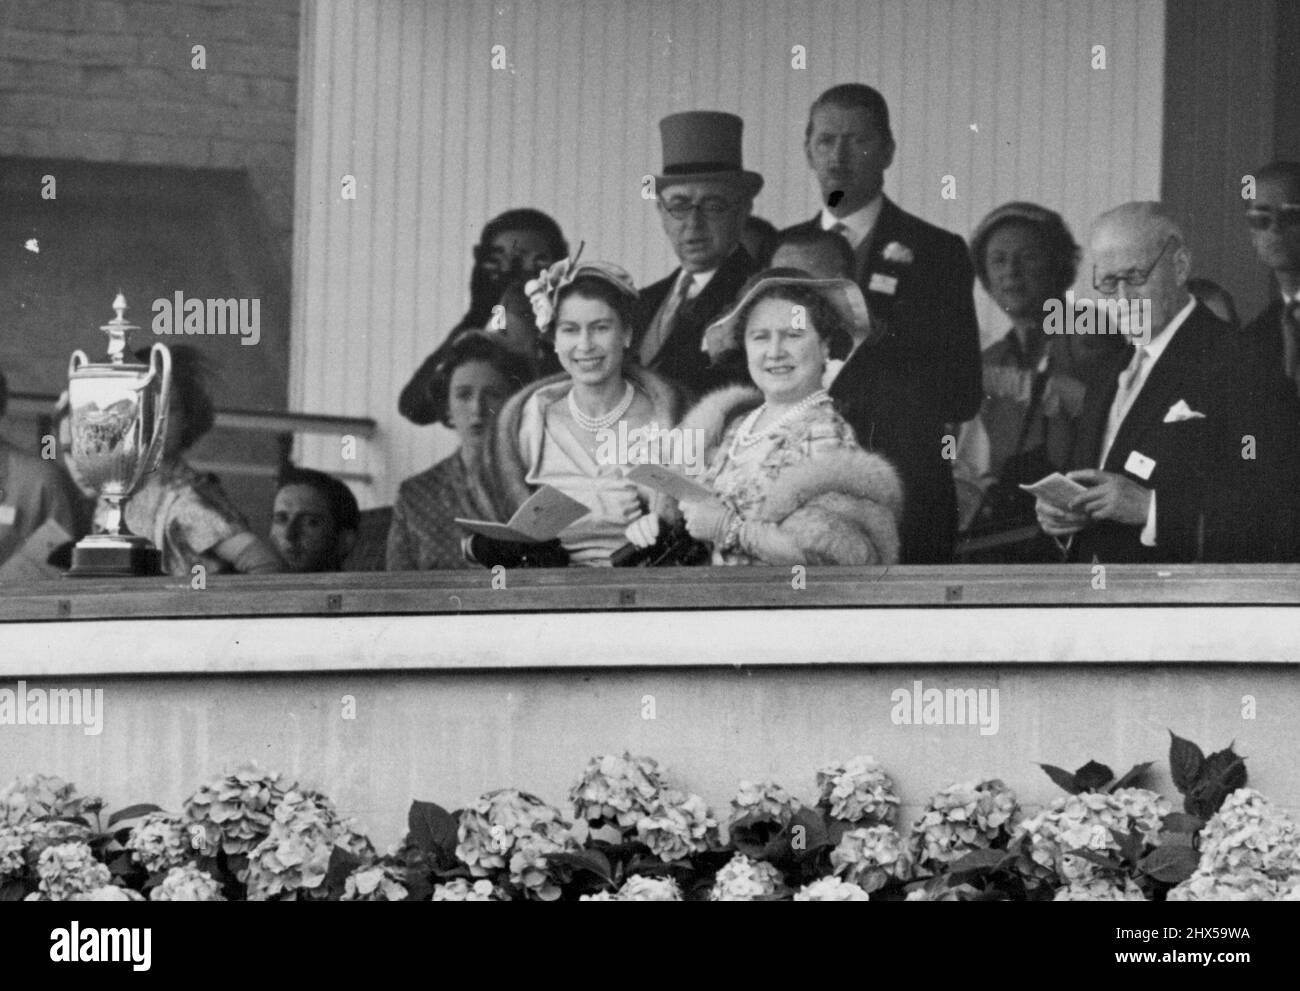 Famille royale à Ascot -- tous les sourires dans la boîte royale à Ascot cet après-midi sont H.M. la Reine et la Reine mère comme ils regardent la course. Plusieurs membres de la famille royale faisaient partie des grandes foules de spectateurs qui ont assisté à la course d'Ascot aujourd'hui, le premier jour de la rencontre royale d'Ascot. 15 juin 1954. (Photo de Fox photos). Banque D'Images